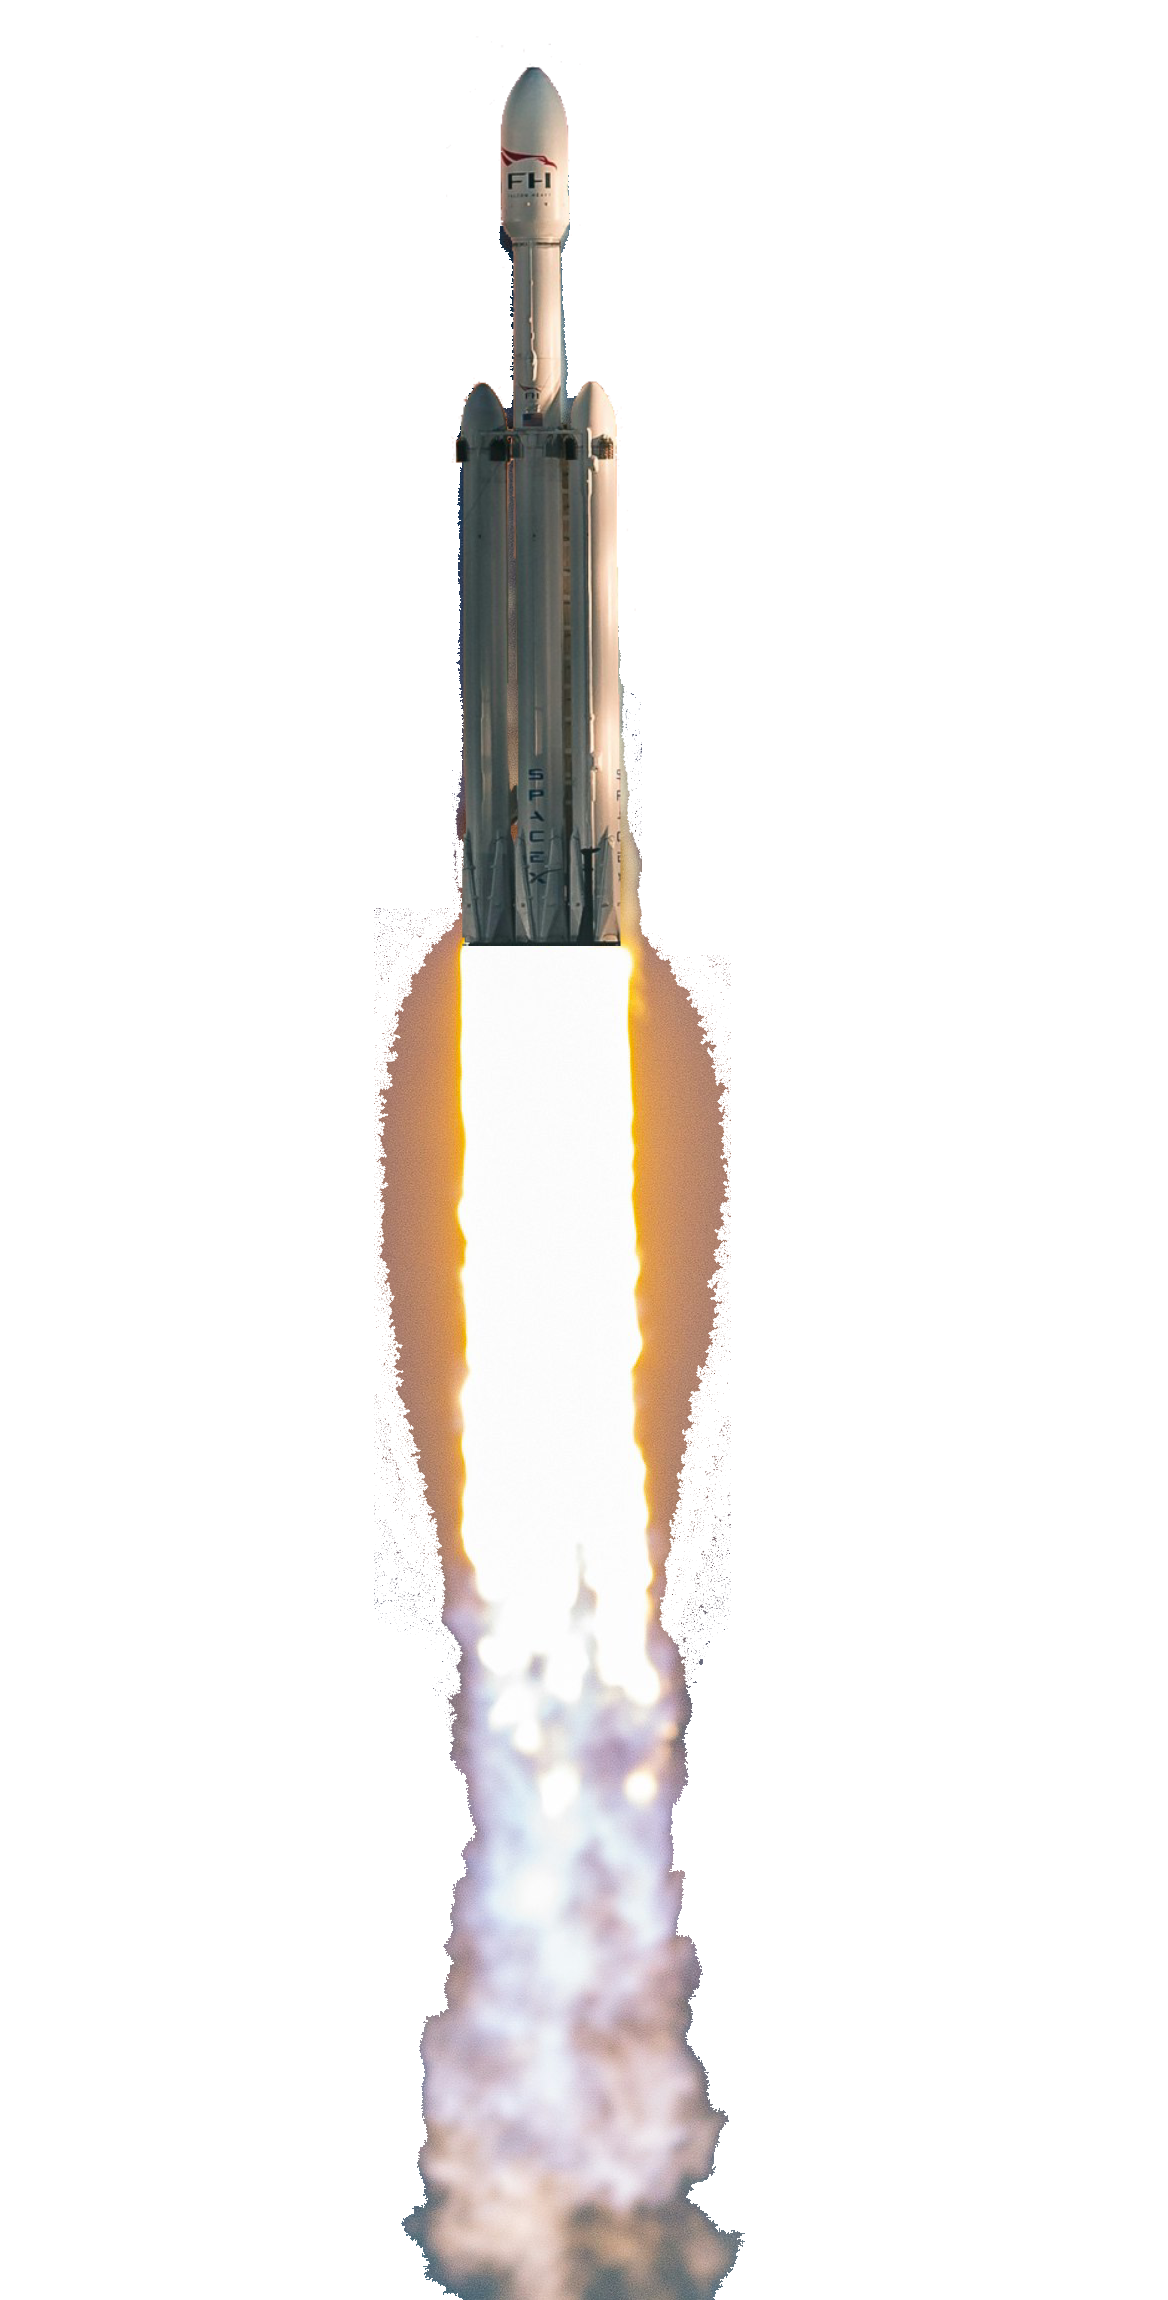 Spaceship launching